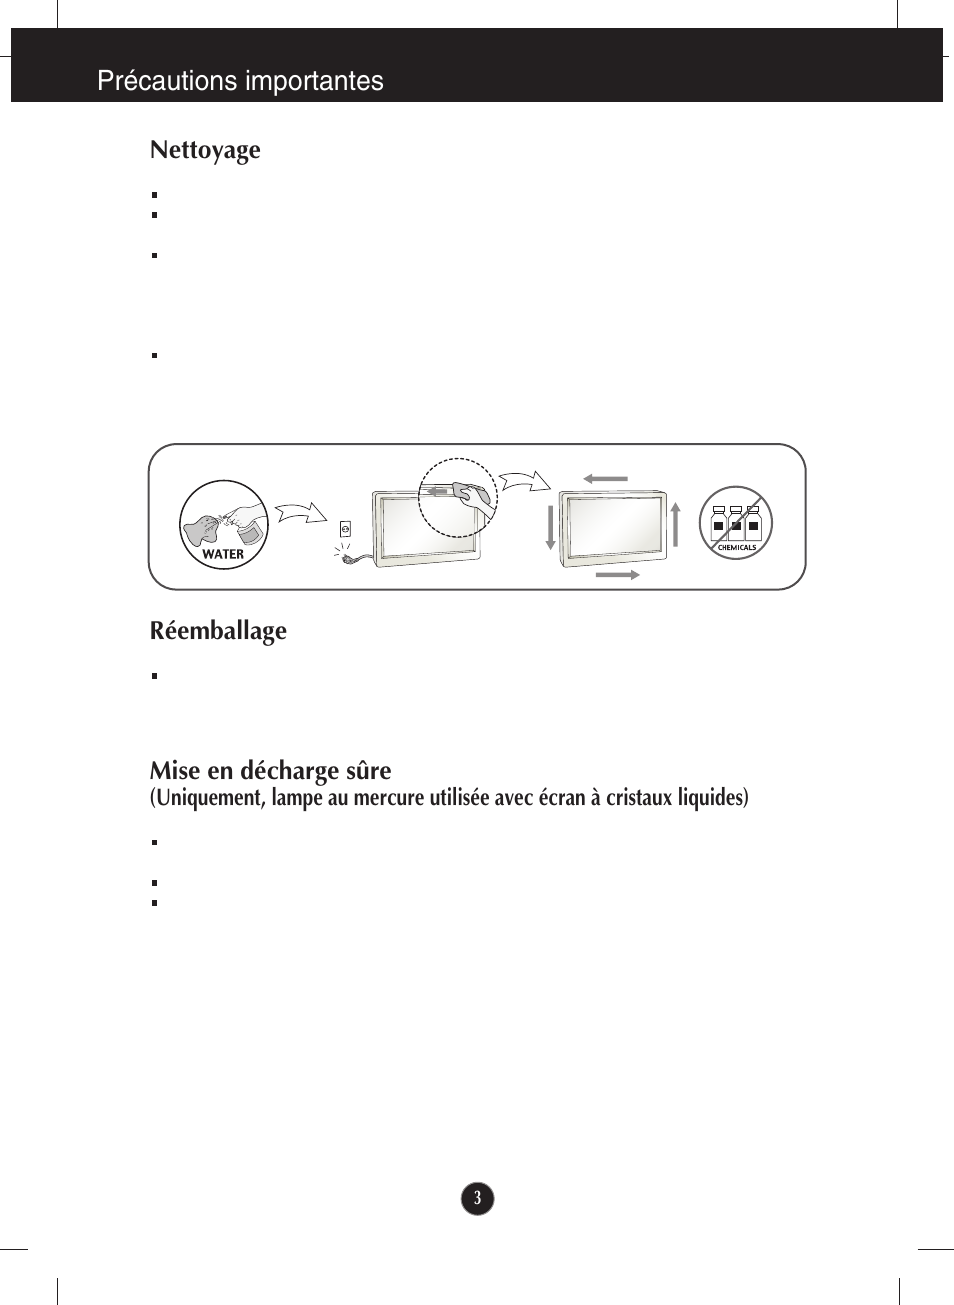 Nettoyage, Réemballage, Précautions importantes | LG W2243S-PF Manuel d'utilisation | Page 4 / 34